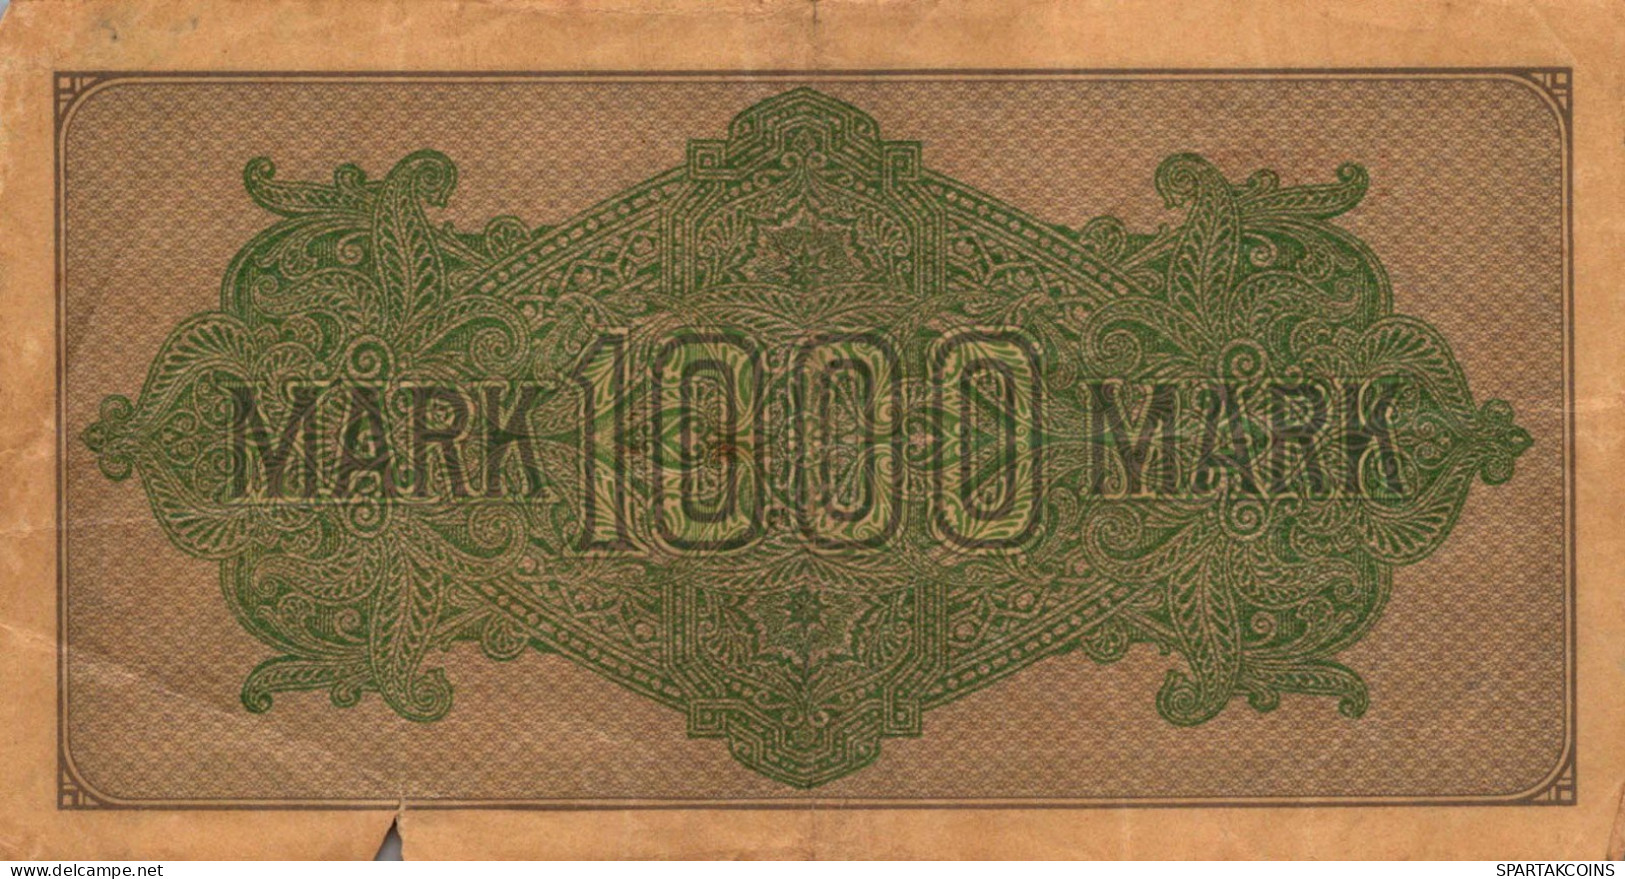 1000 MARK 1922 Stadt BERLIN DEUTSCHLAND Papiergeld Banknote #PL440 - [11] Emissions Locales